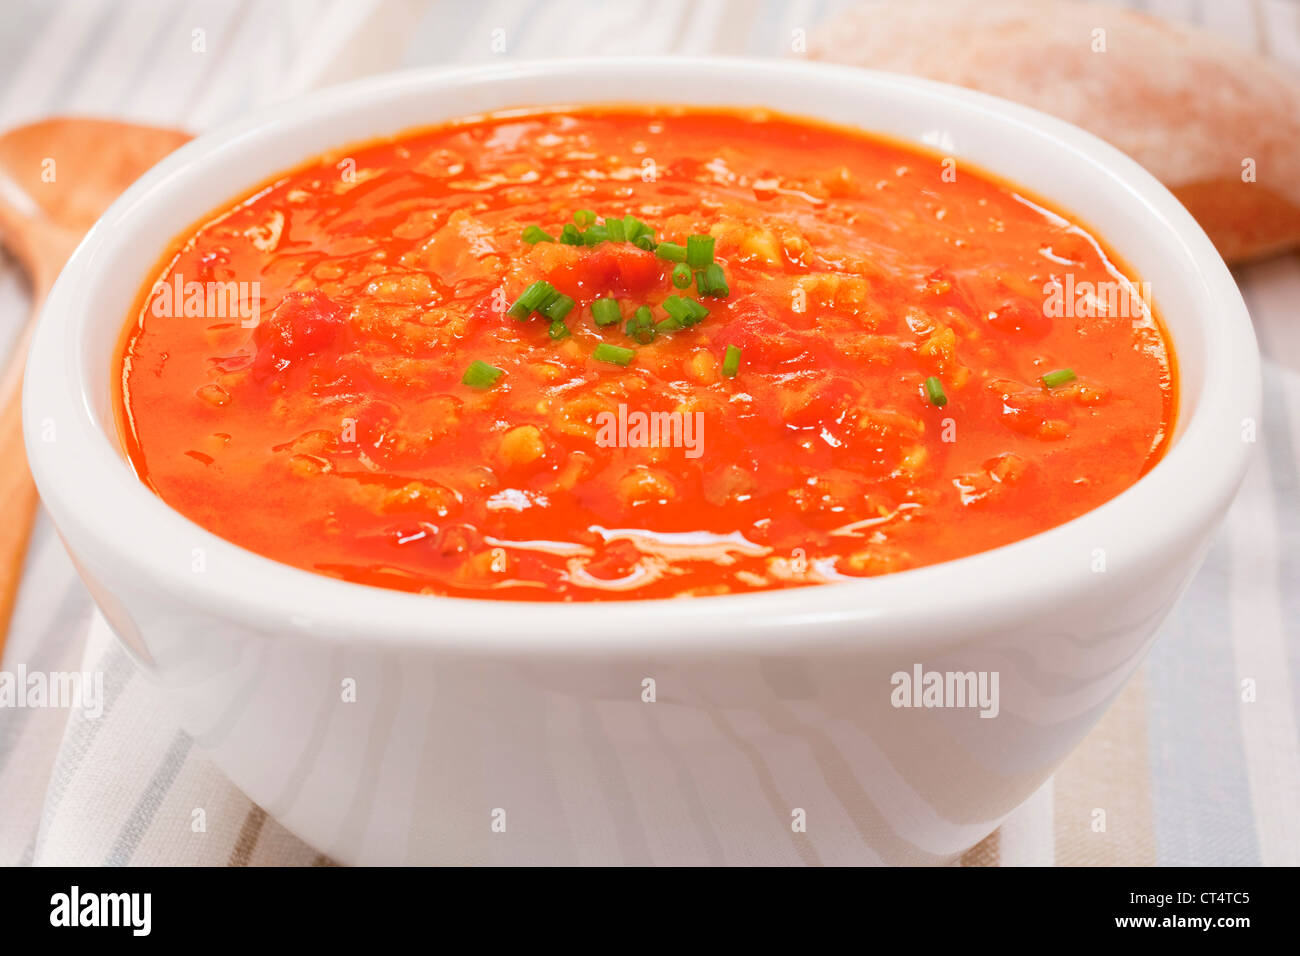 Una ciotola di lenticchie e zuppa di pomodoro garmished con erba cipollina. Foto Stock